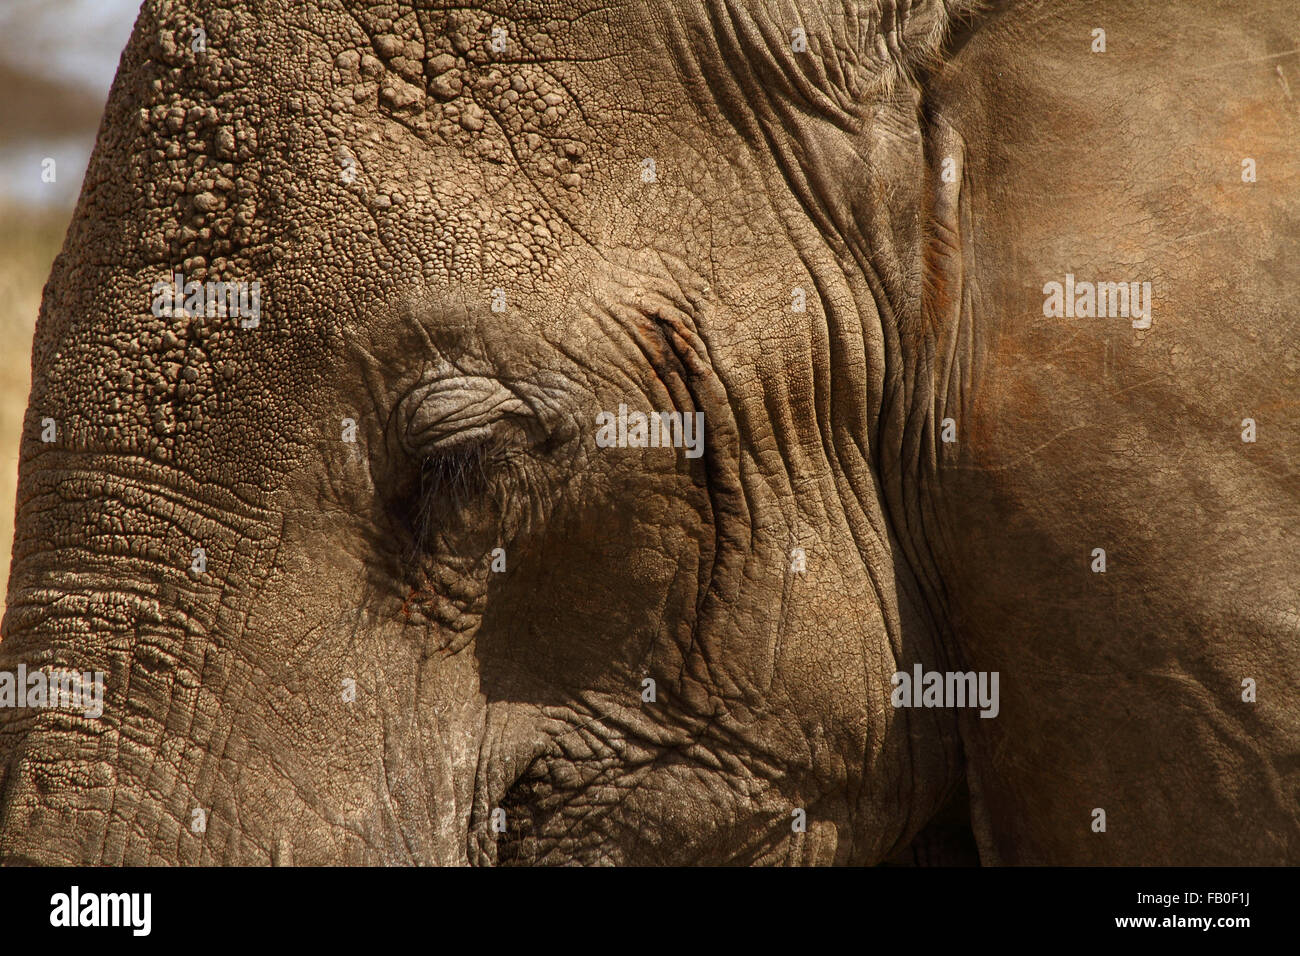 Immagine ravvicinata di un elefante la testa concentrata intorno all'occhio coperchio, la fronte e la mascella. Foto Stock